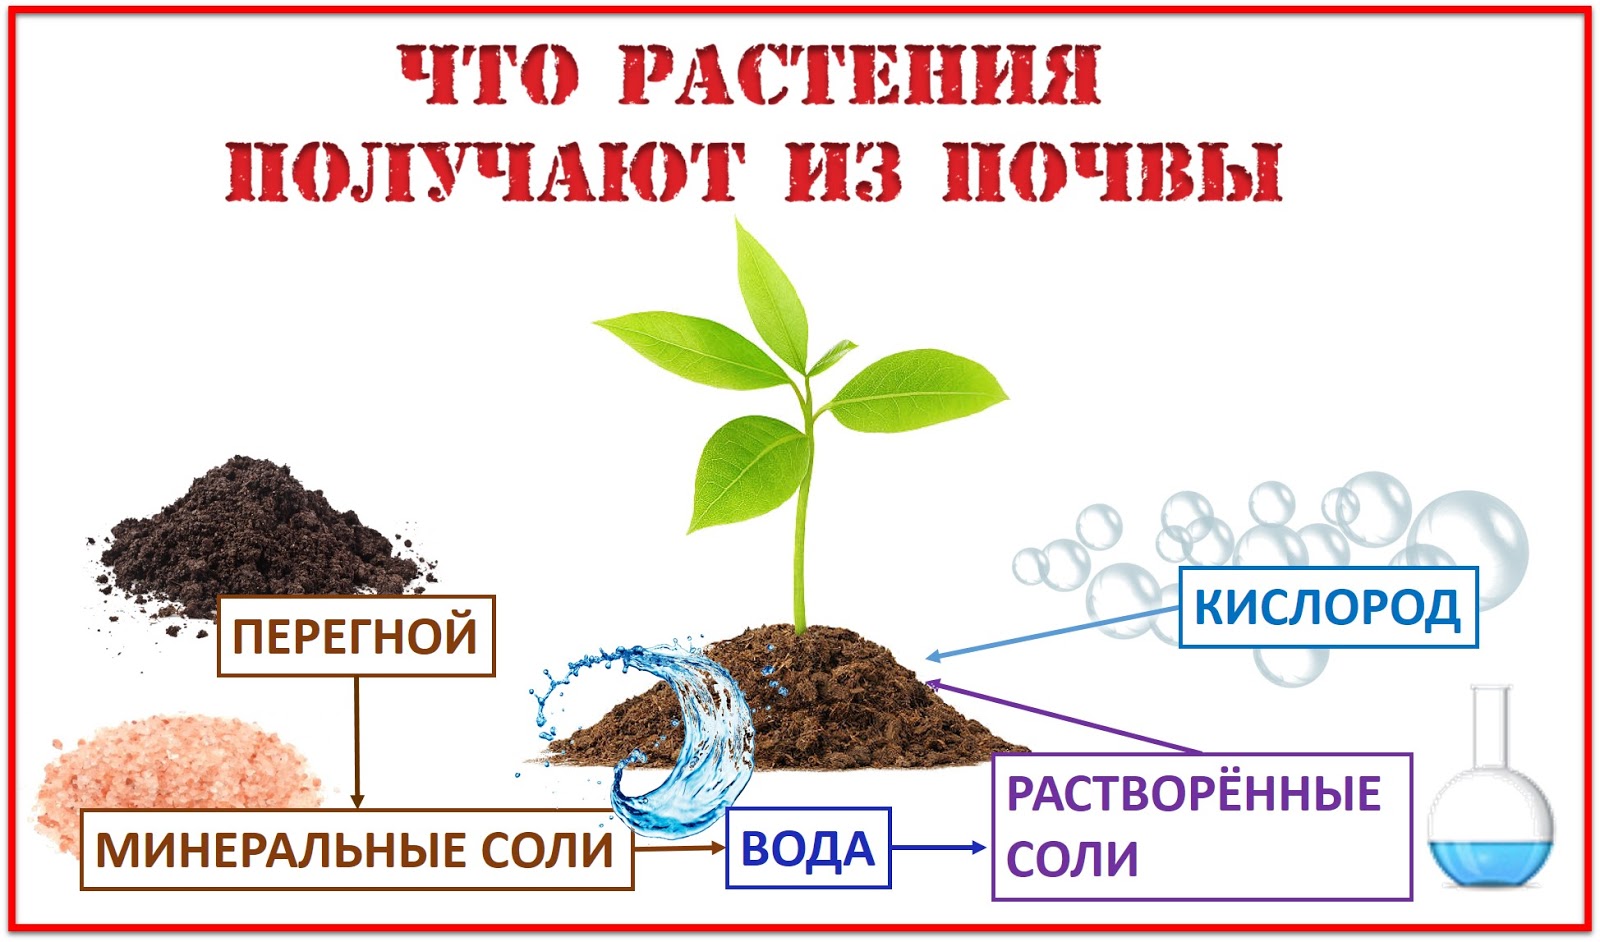 Из какого растения получают ингредиент филобиома актив. Растения в почве. Что растения получают из почвы. МЗ прчвы растения пооучают. Схема что растения получают из почвы.